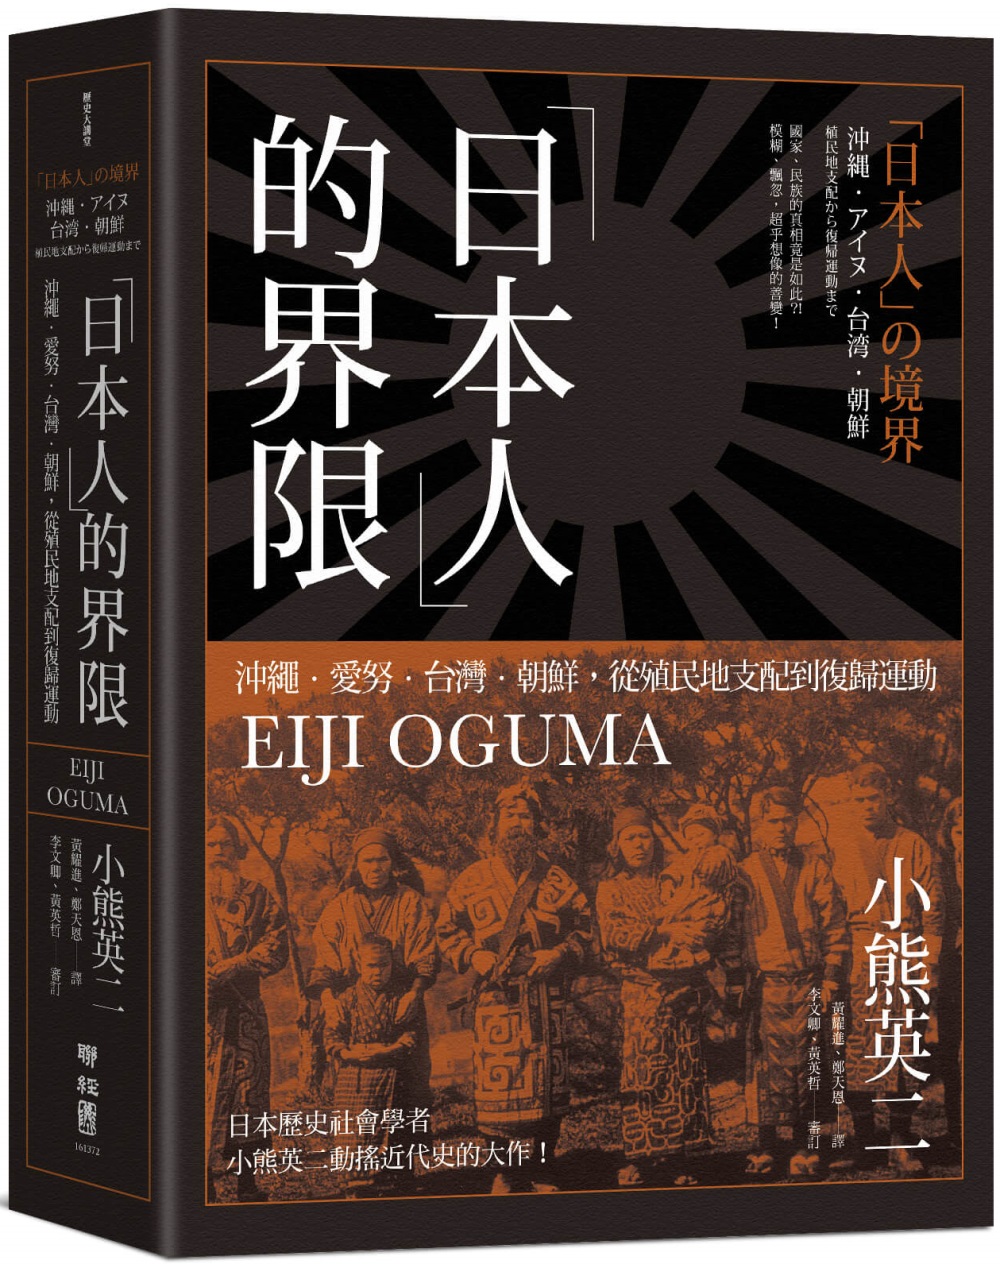 「日本人」的界限：沖繩・愛努・台灣・朝鮮，從殖民地支配到復歸運動